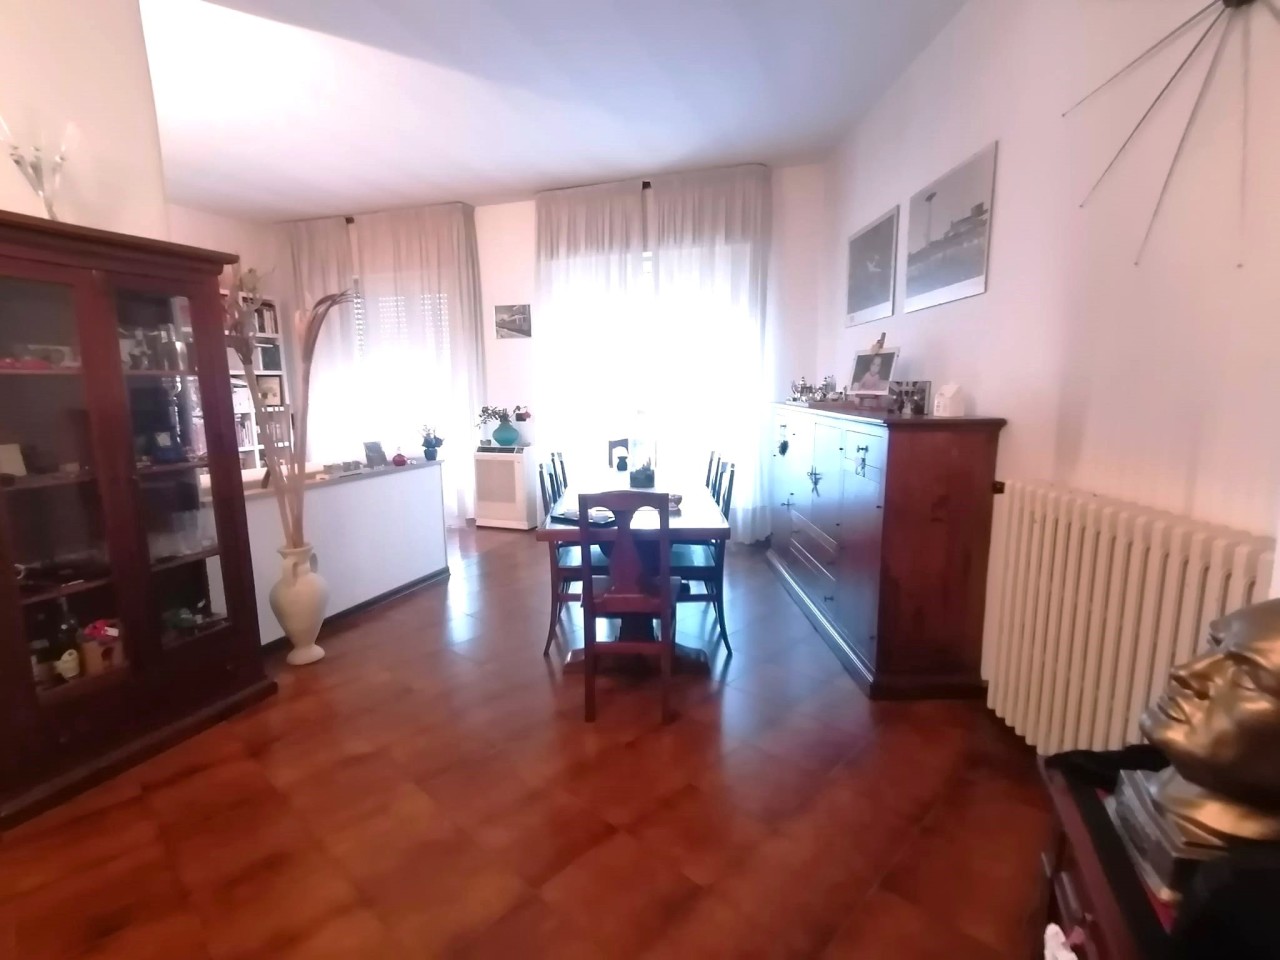 Appartamento in vendita a Vercelli, 6 locali, prezzo € 95.000 | PortaleAgenzieImmobiliari.it